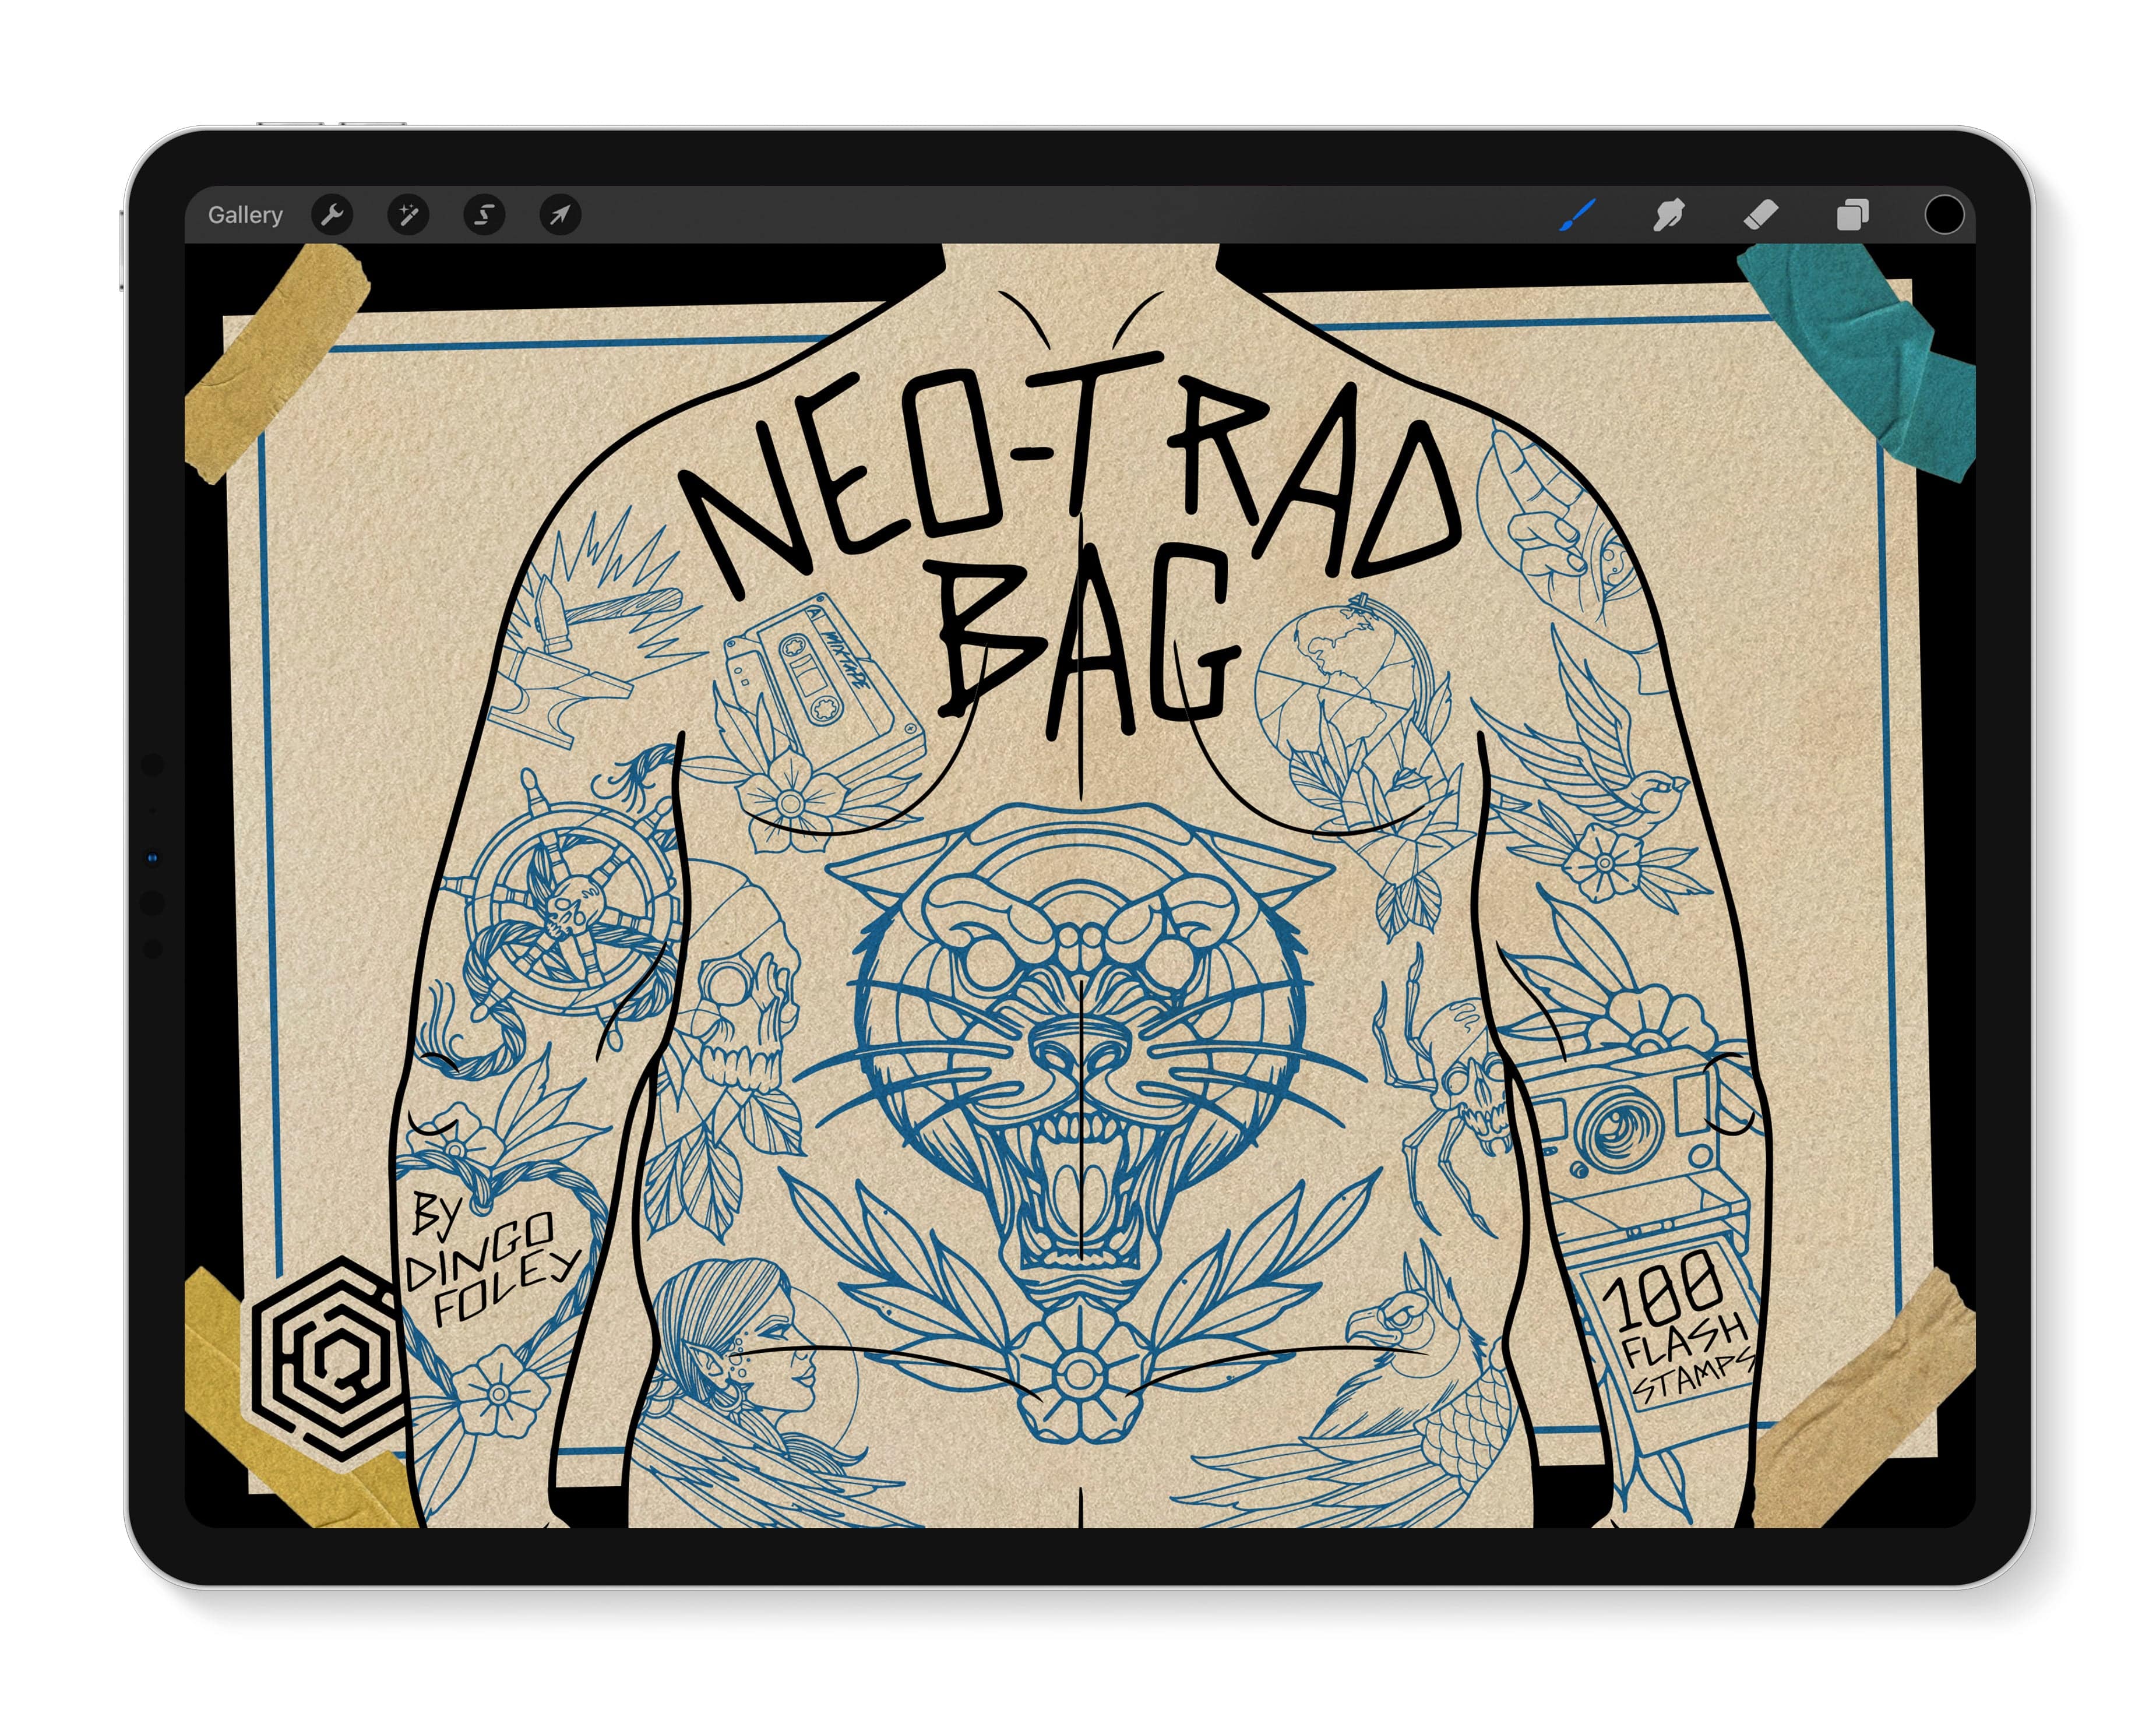 Neo-Trad Bag - Tattoo Smart